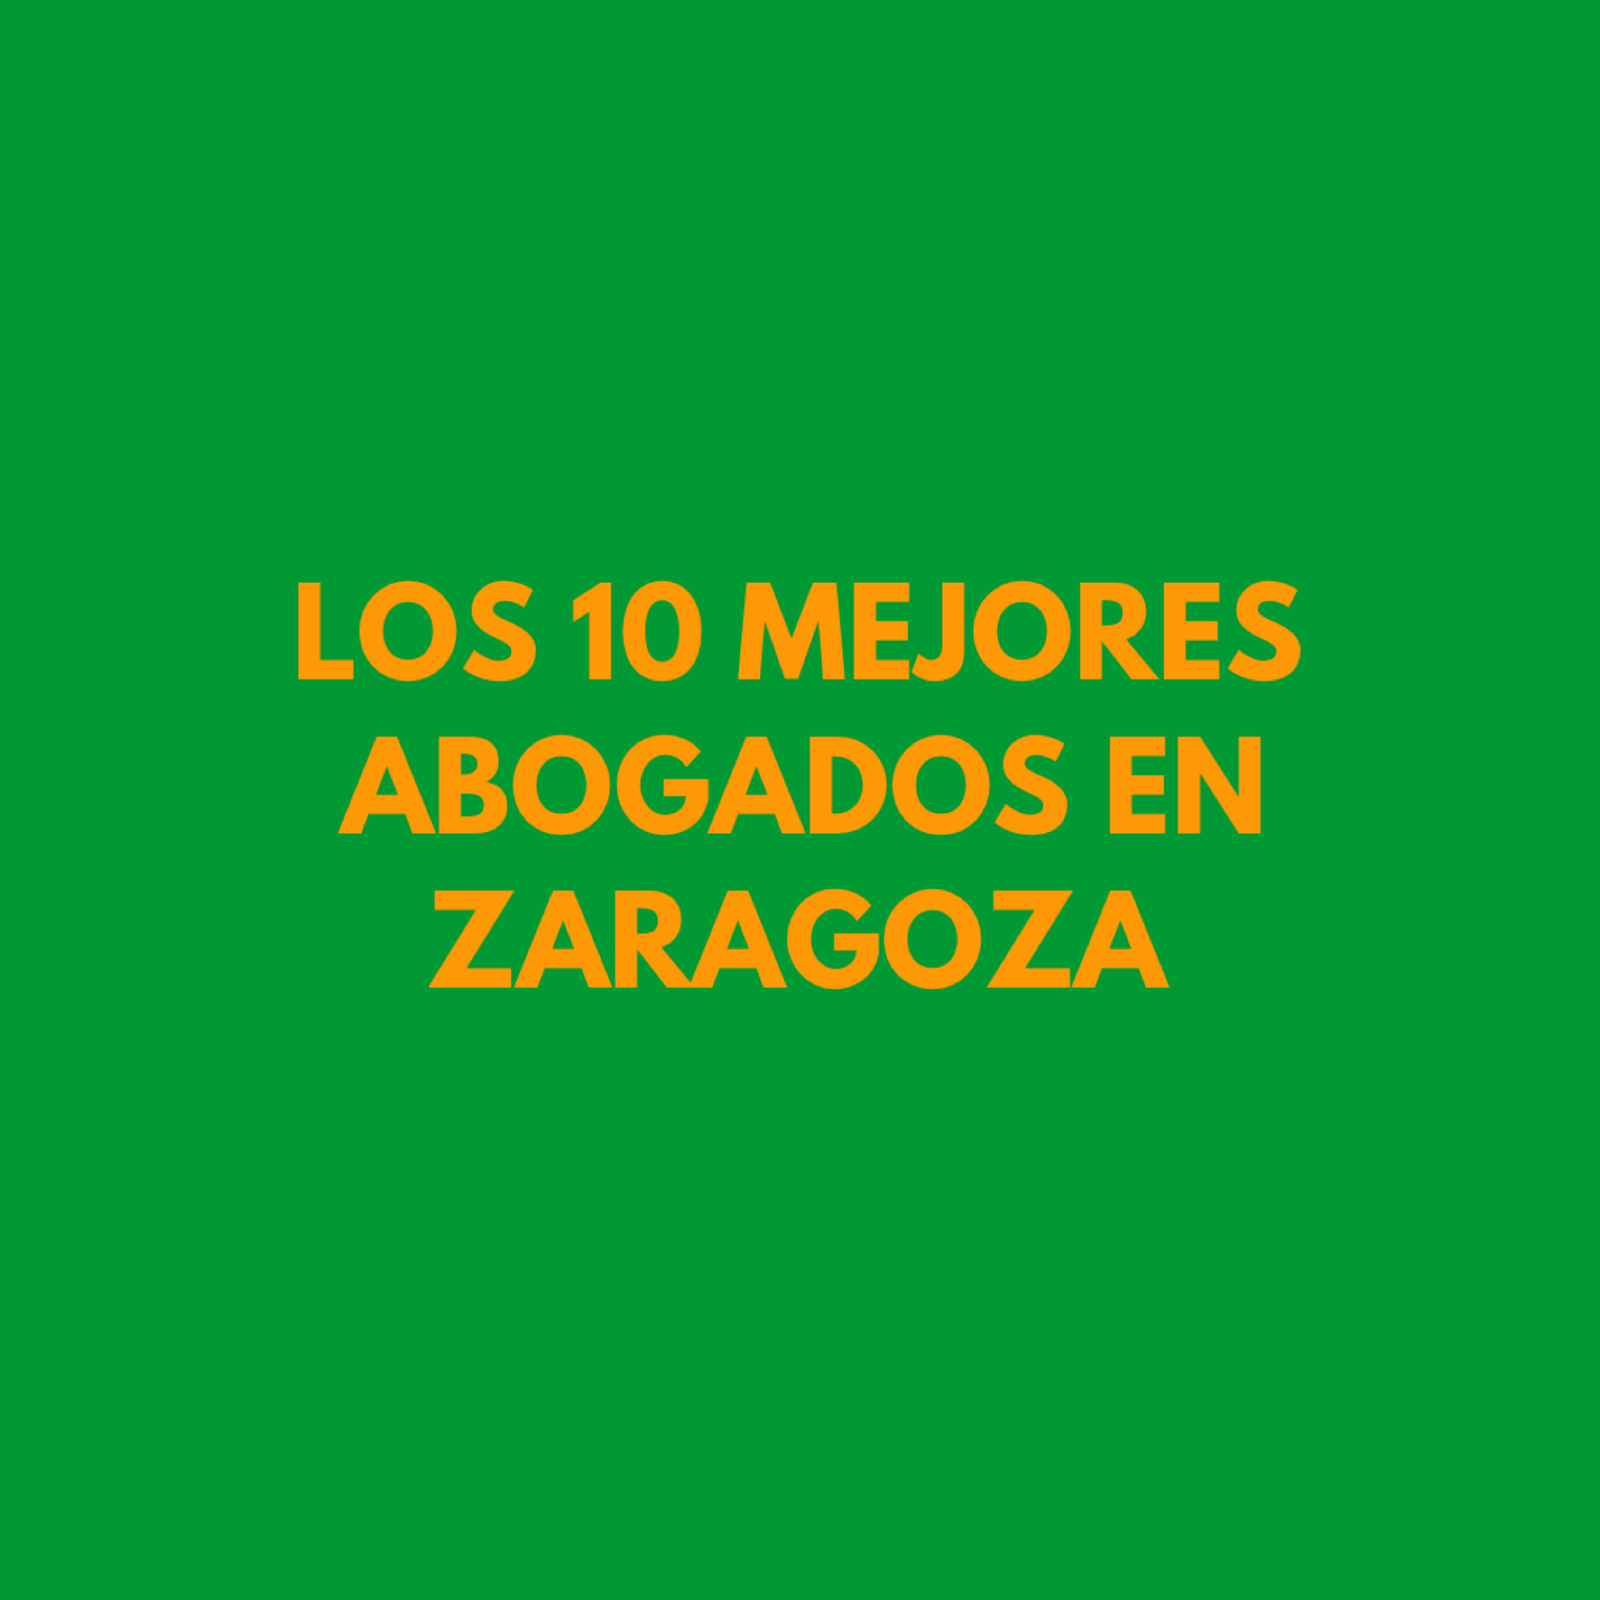 Abogados Zaragoza